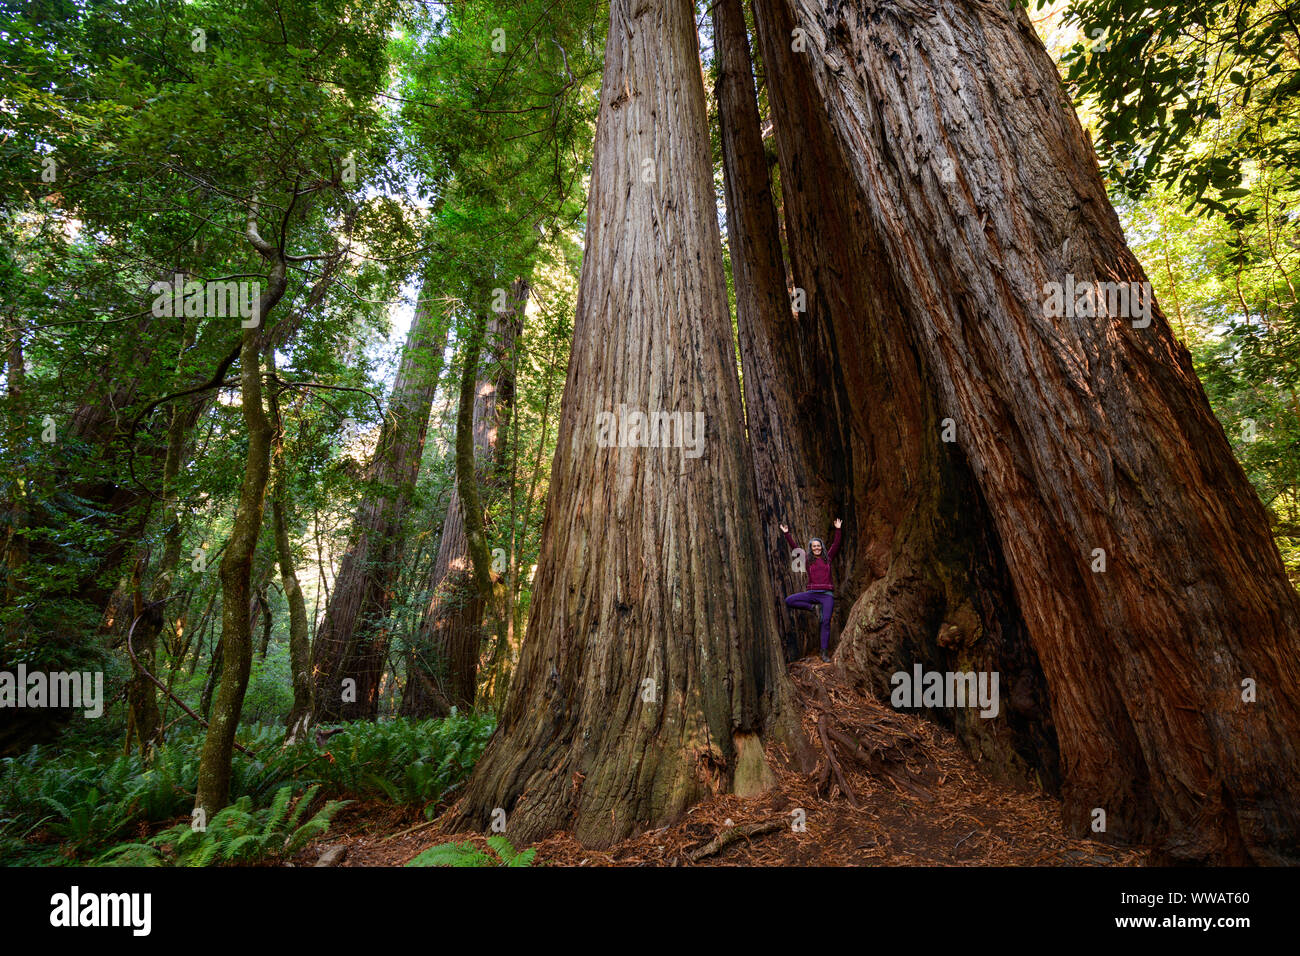 Una mujer que hace yoga dentro de una pose de árbol sequoia y secoyas gigantes, algunos de los árboles más grandes de la tierra, a lo largo de la costa de California a los Redwoods Foto de stock